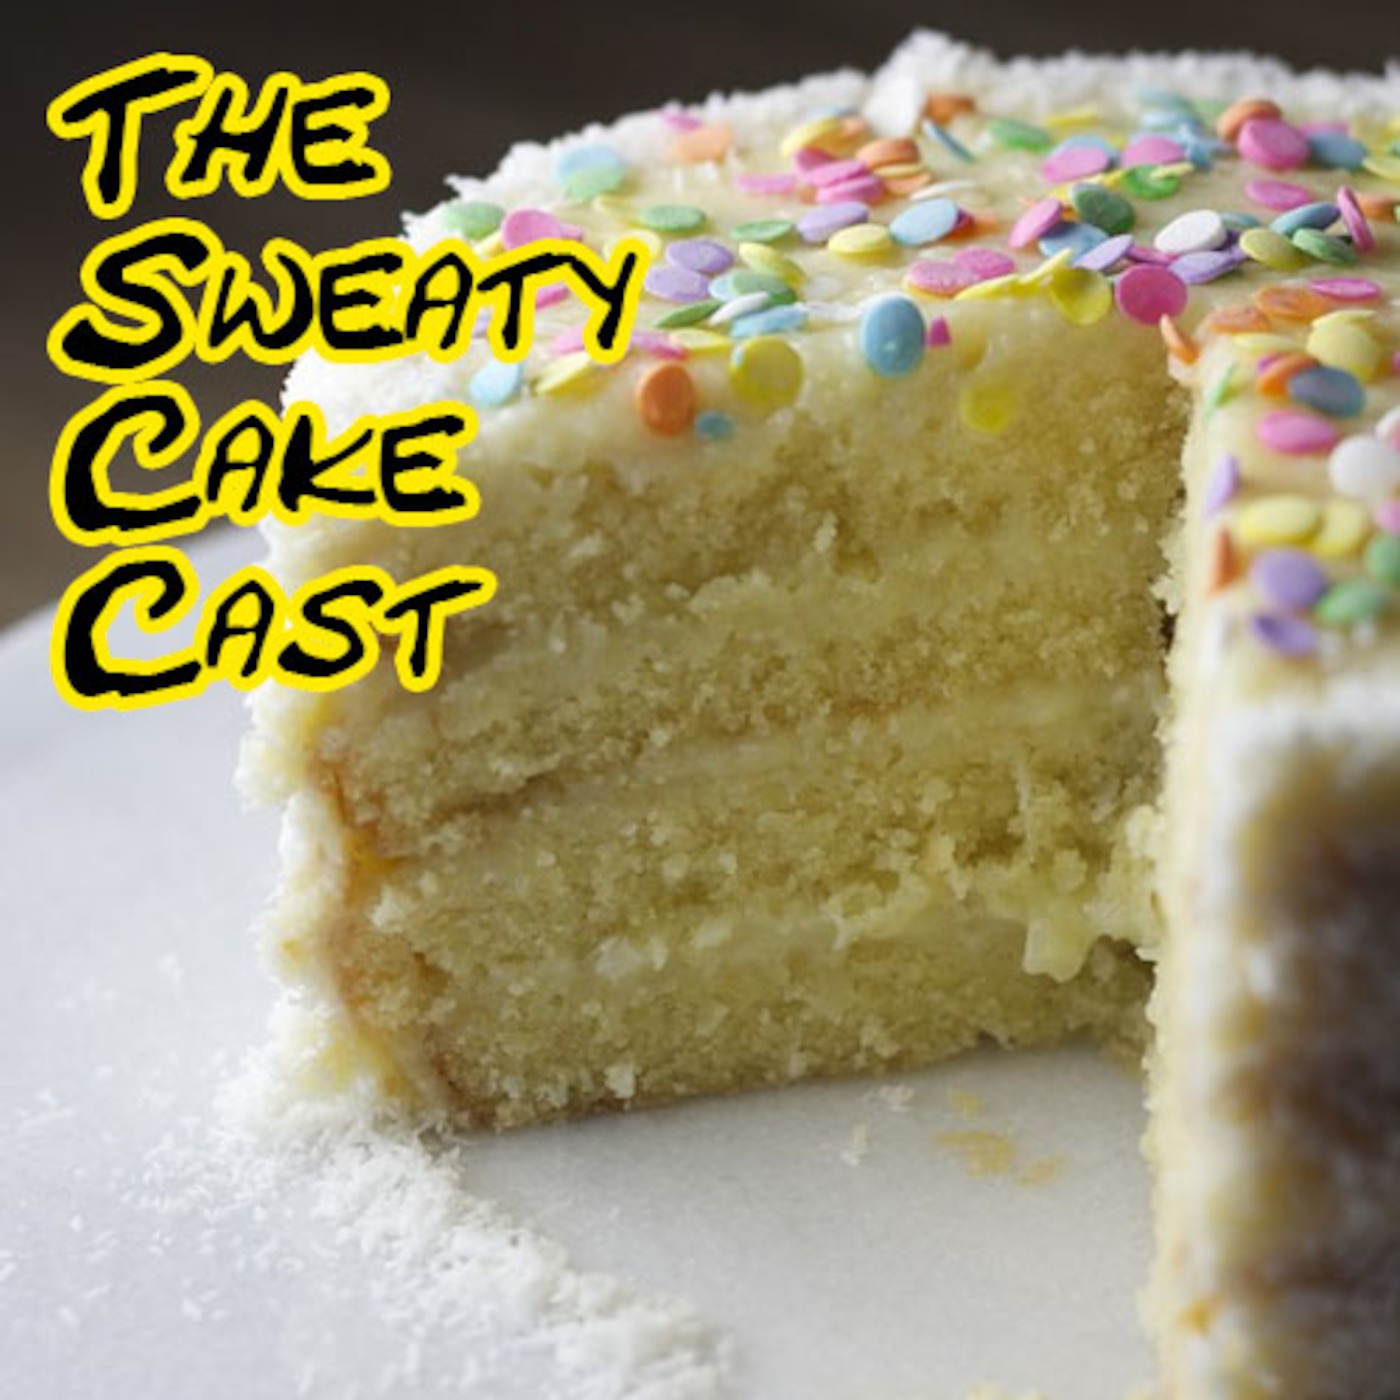 The Sweaty Cake Cast #4 - "Tastes like cancer"